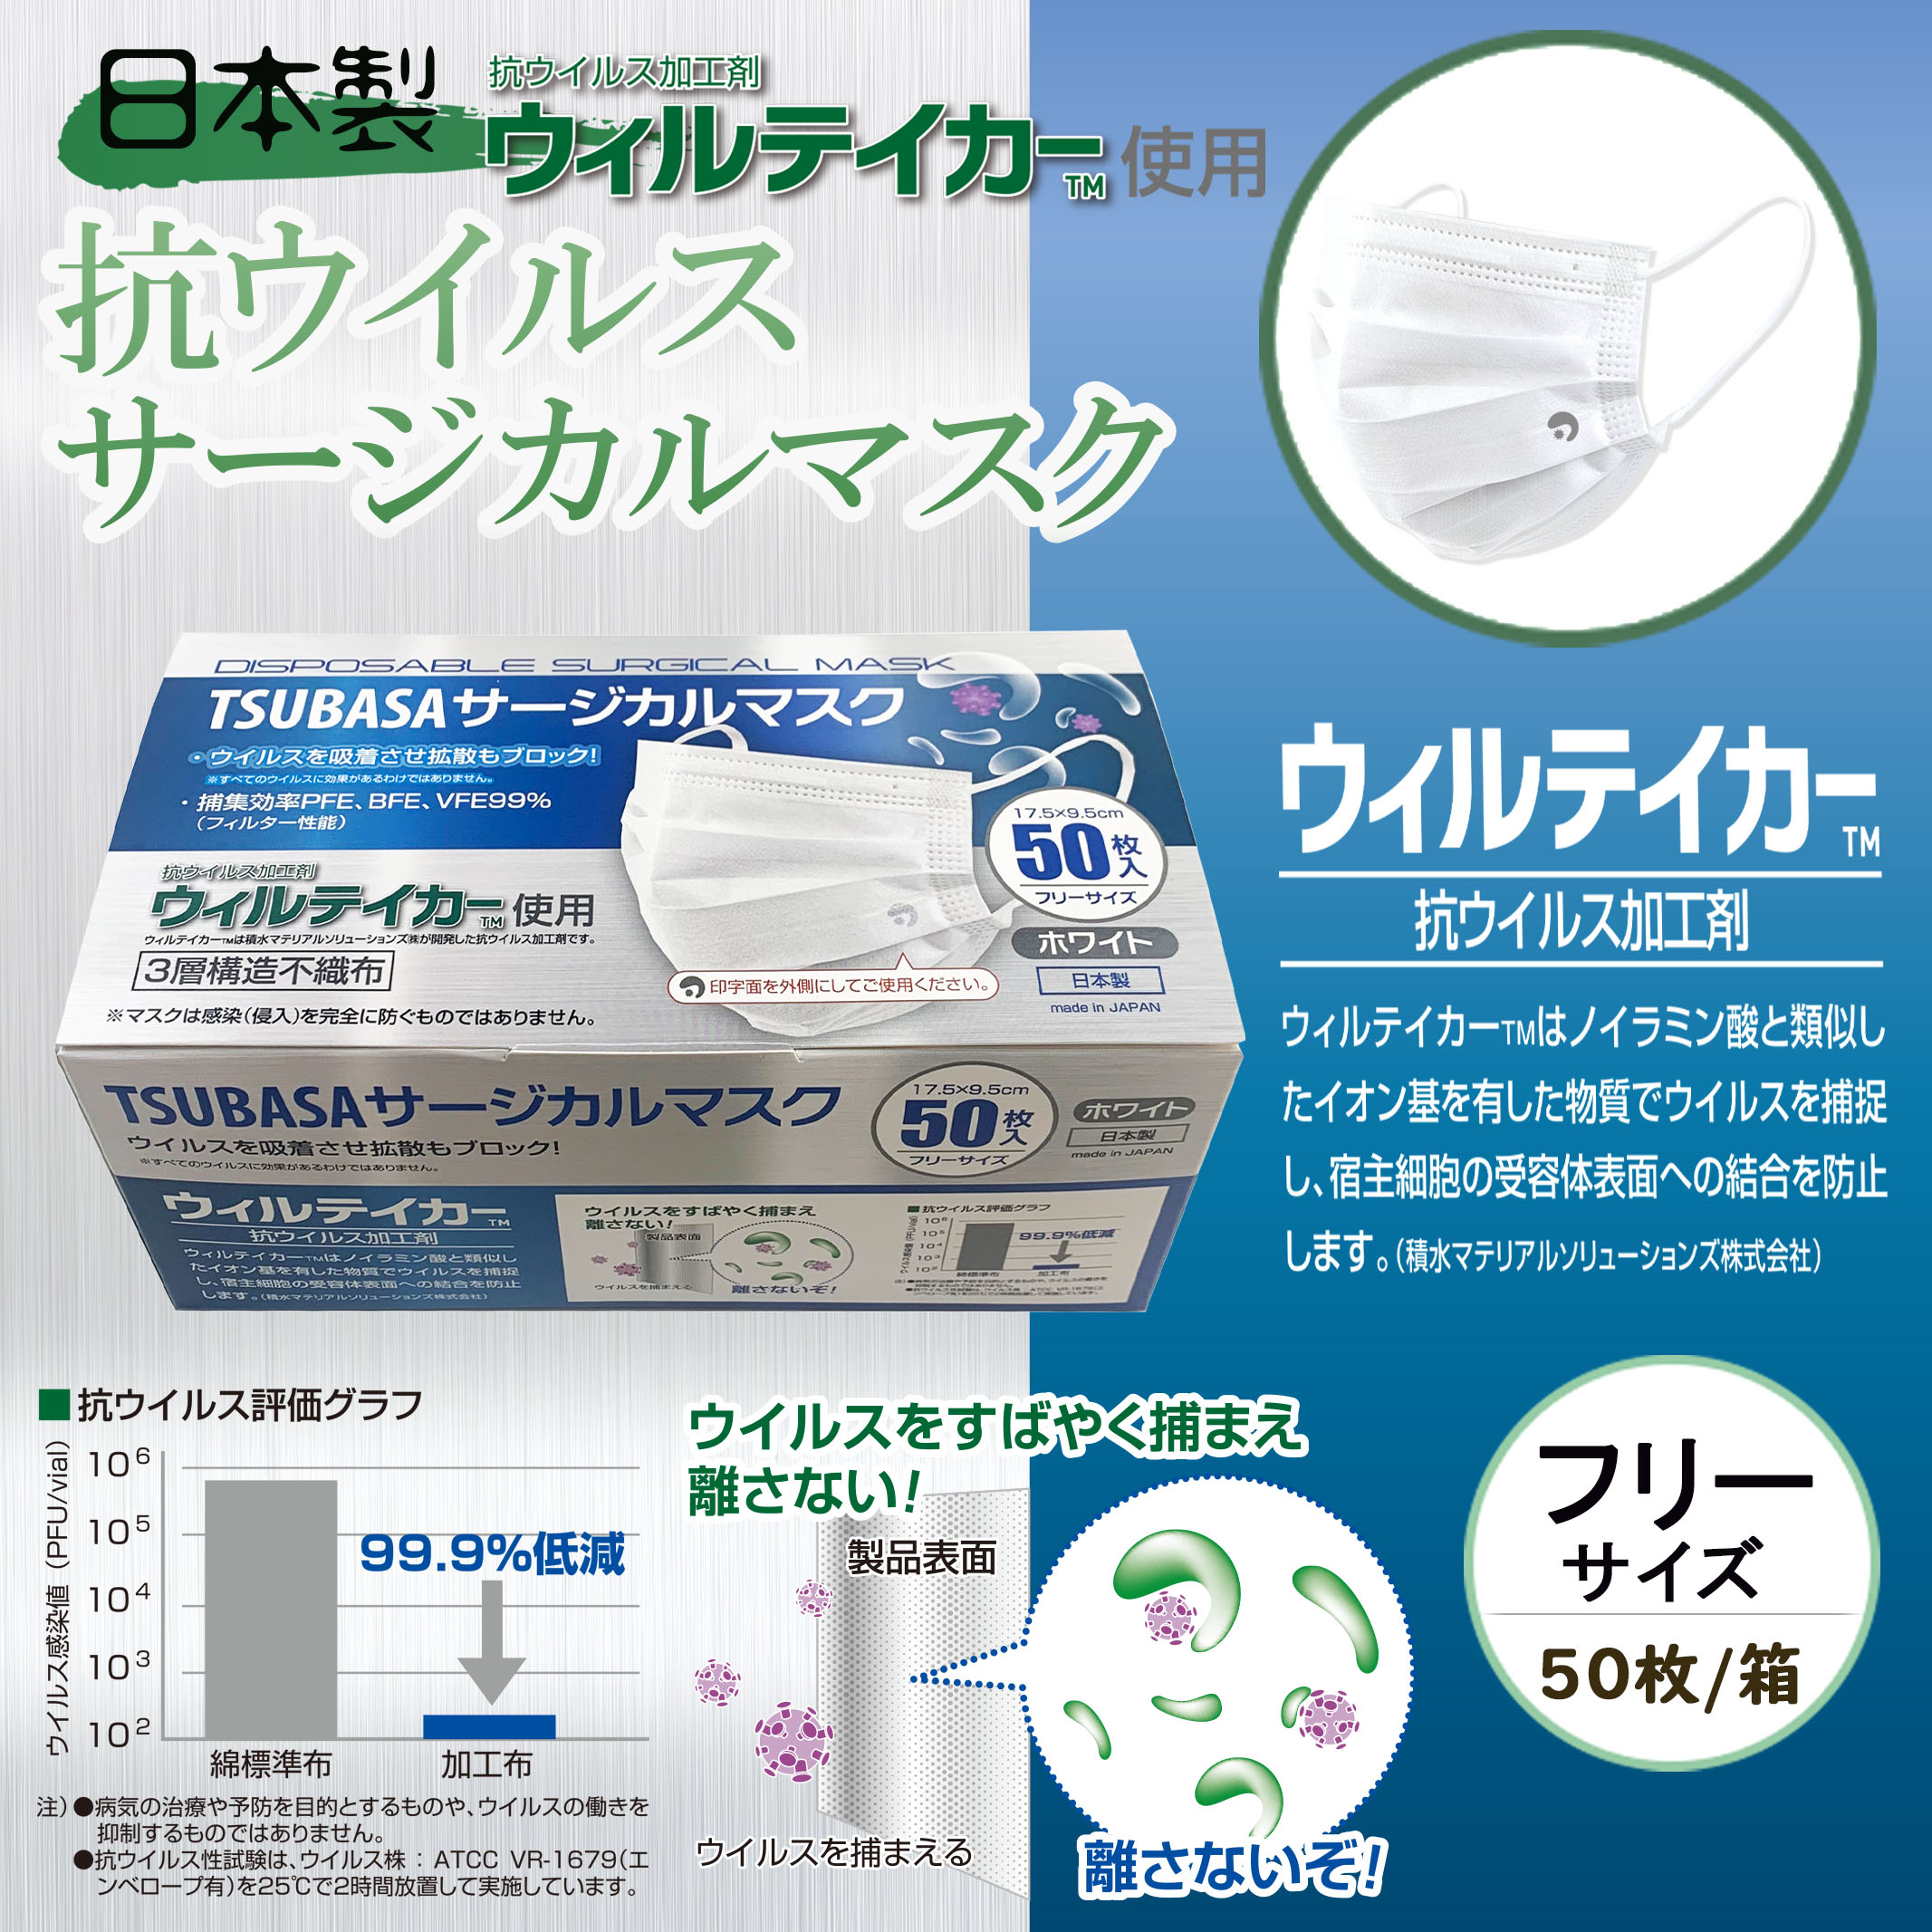 日本製】TSUBASA サージカルマスク 抗ウイルス加工剤 ウィルテイカー